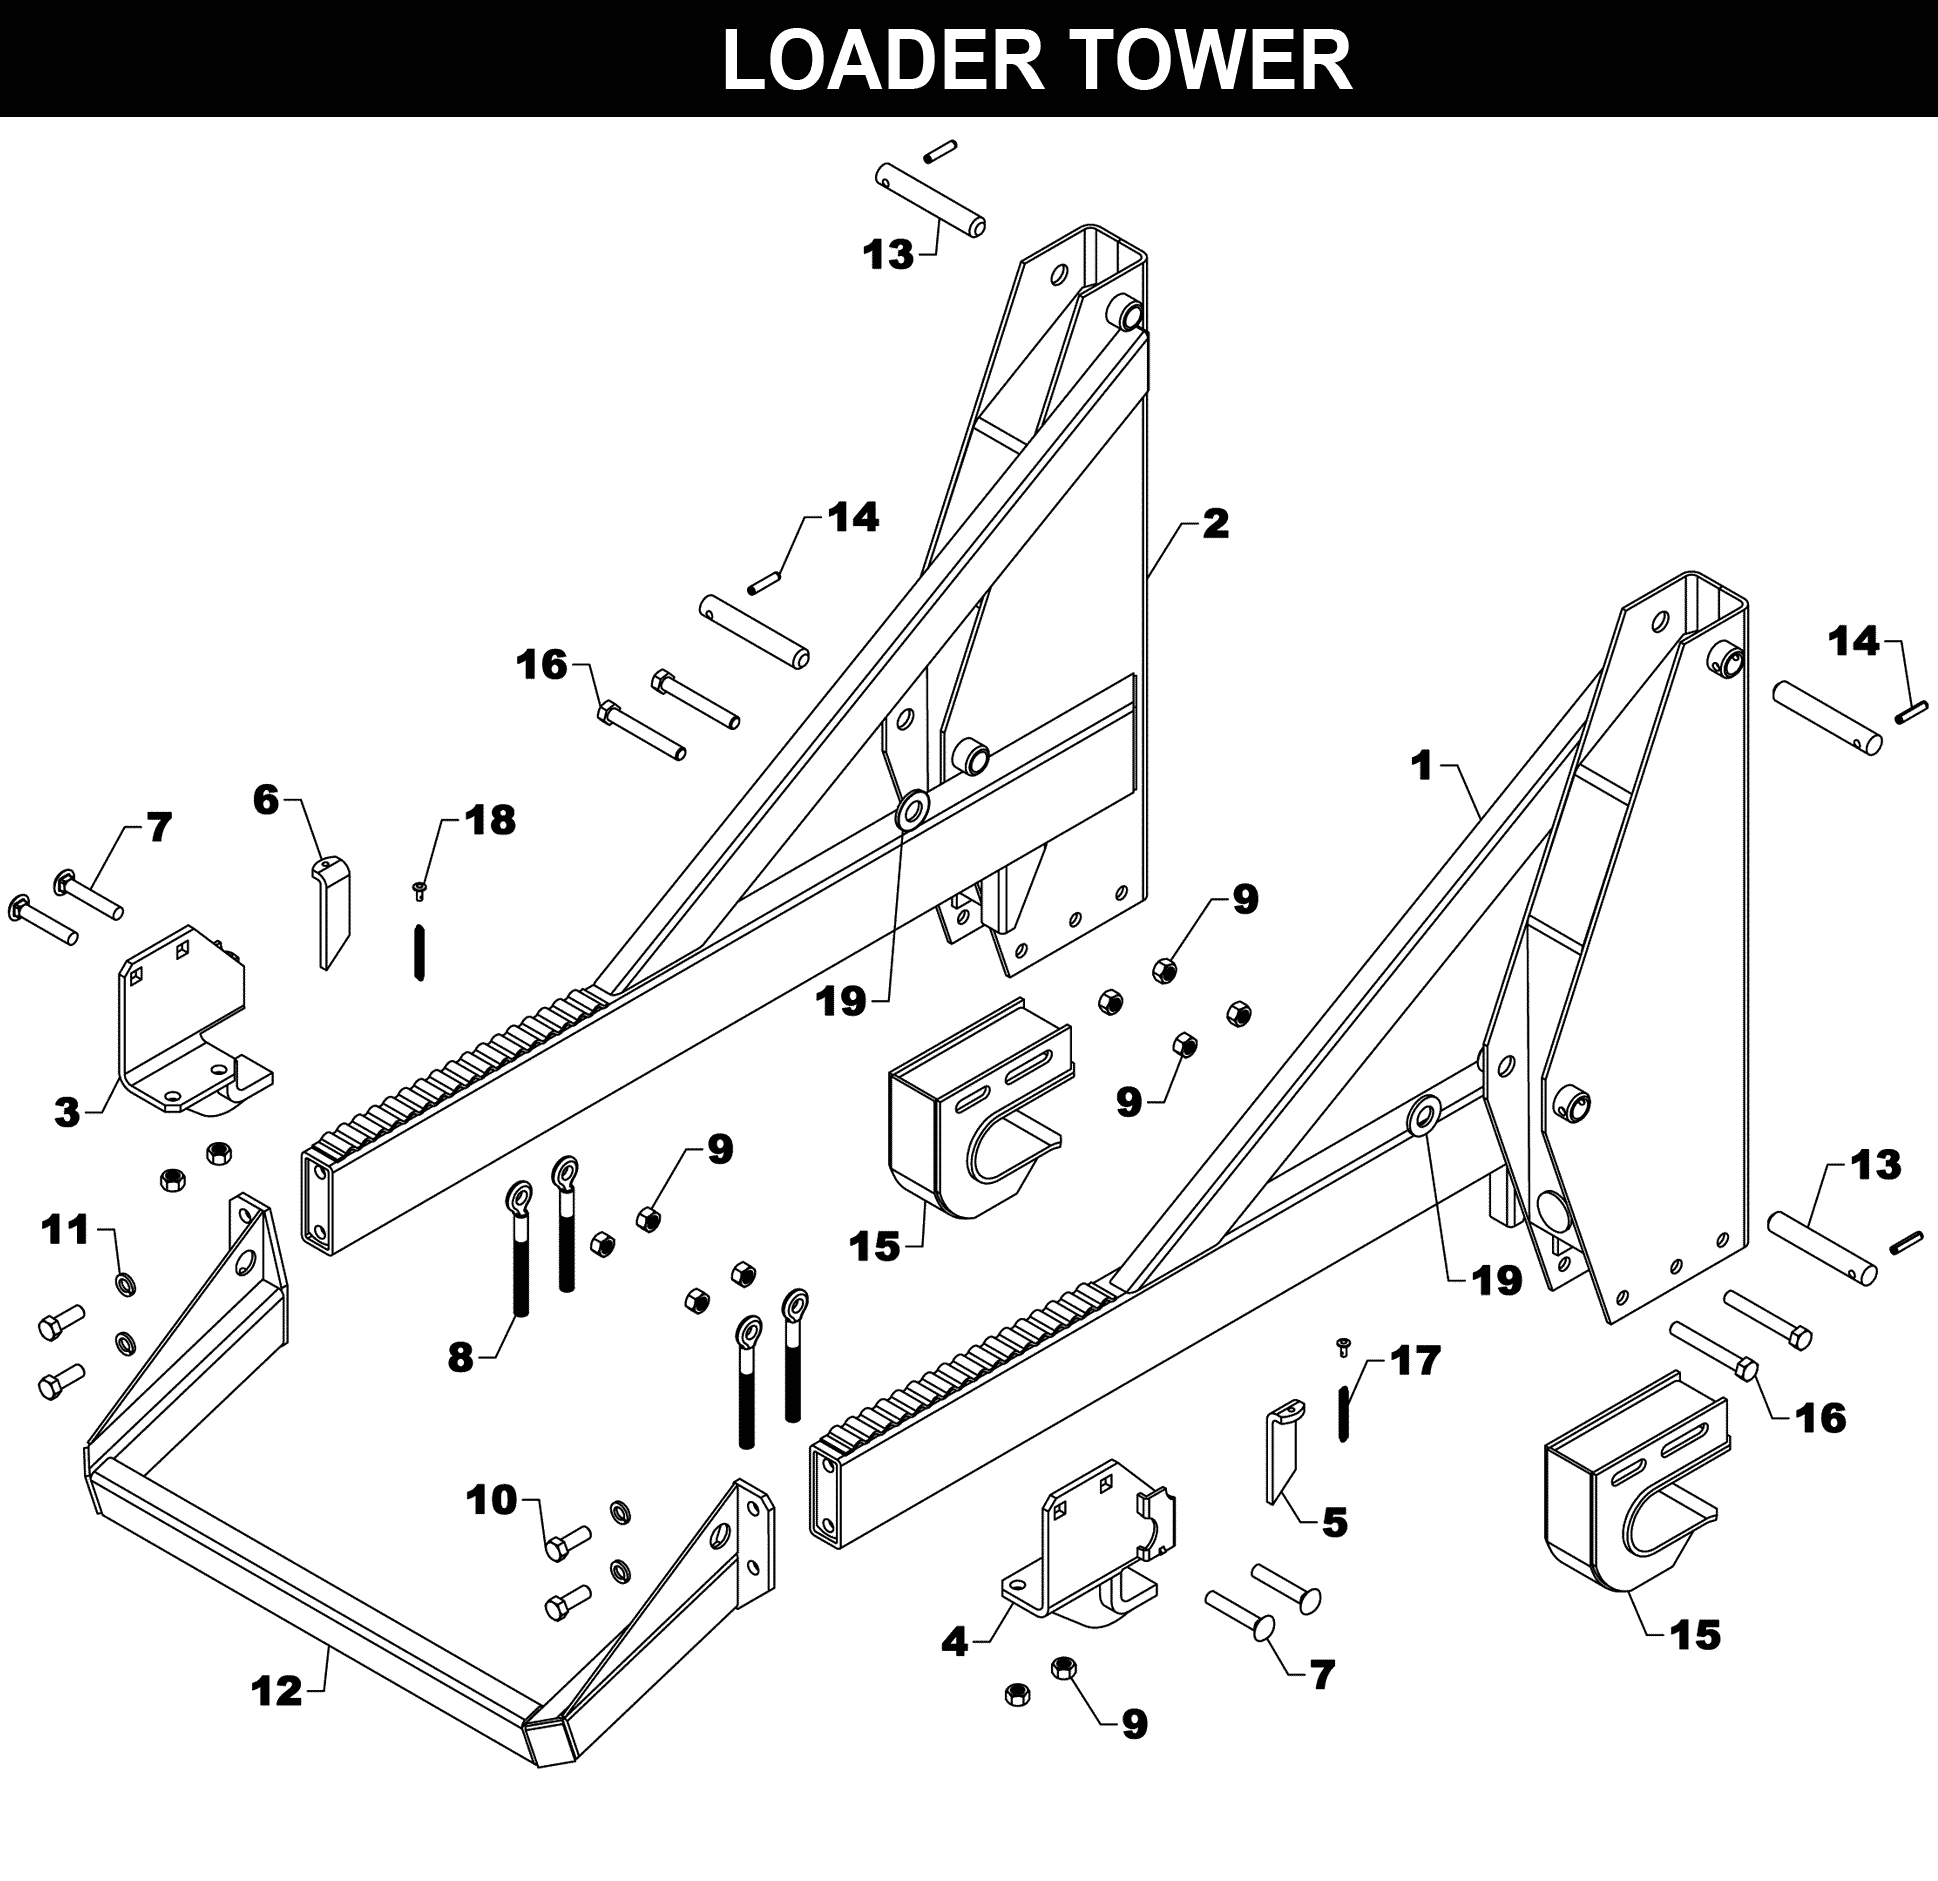 TA-28 Loader Tower